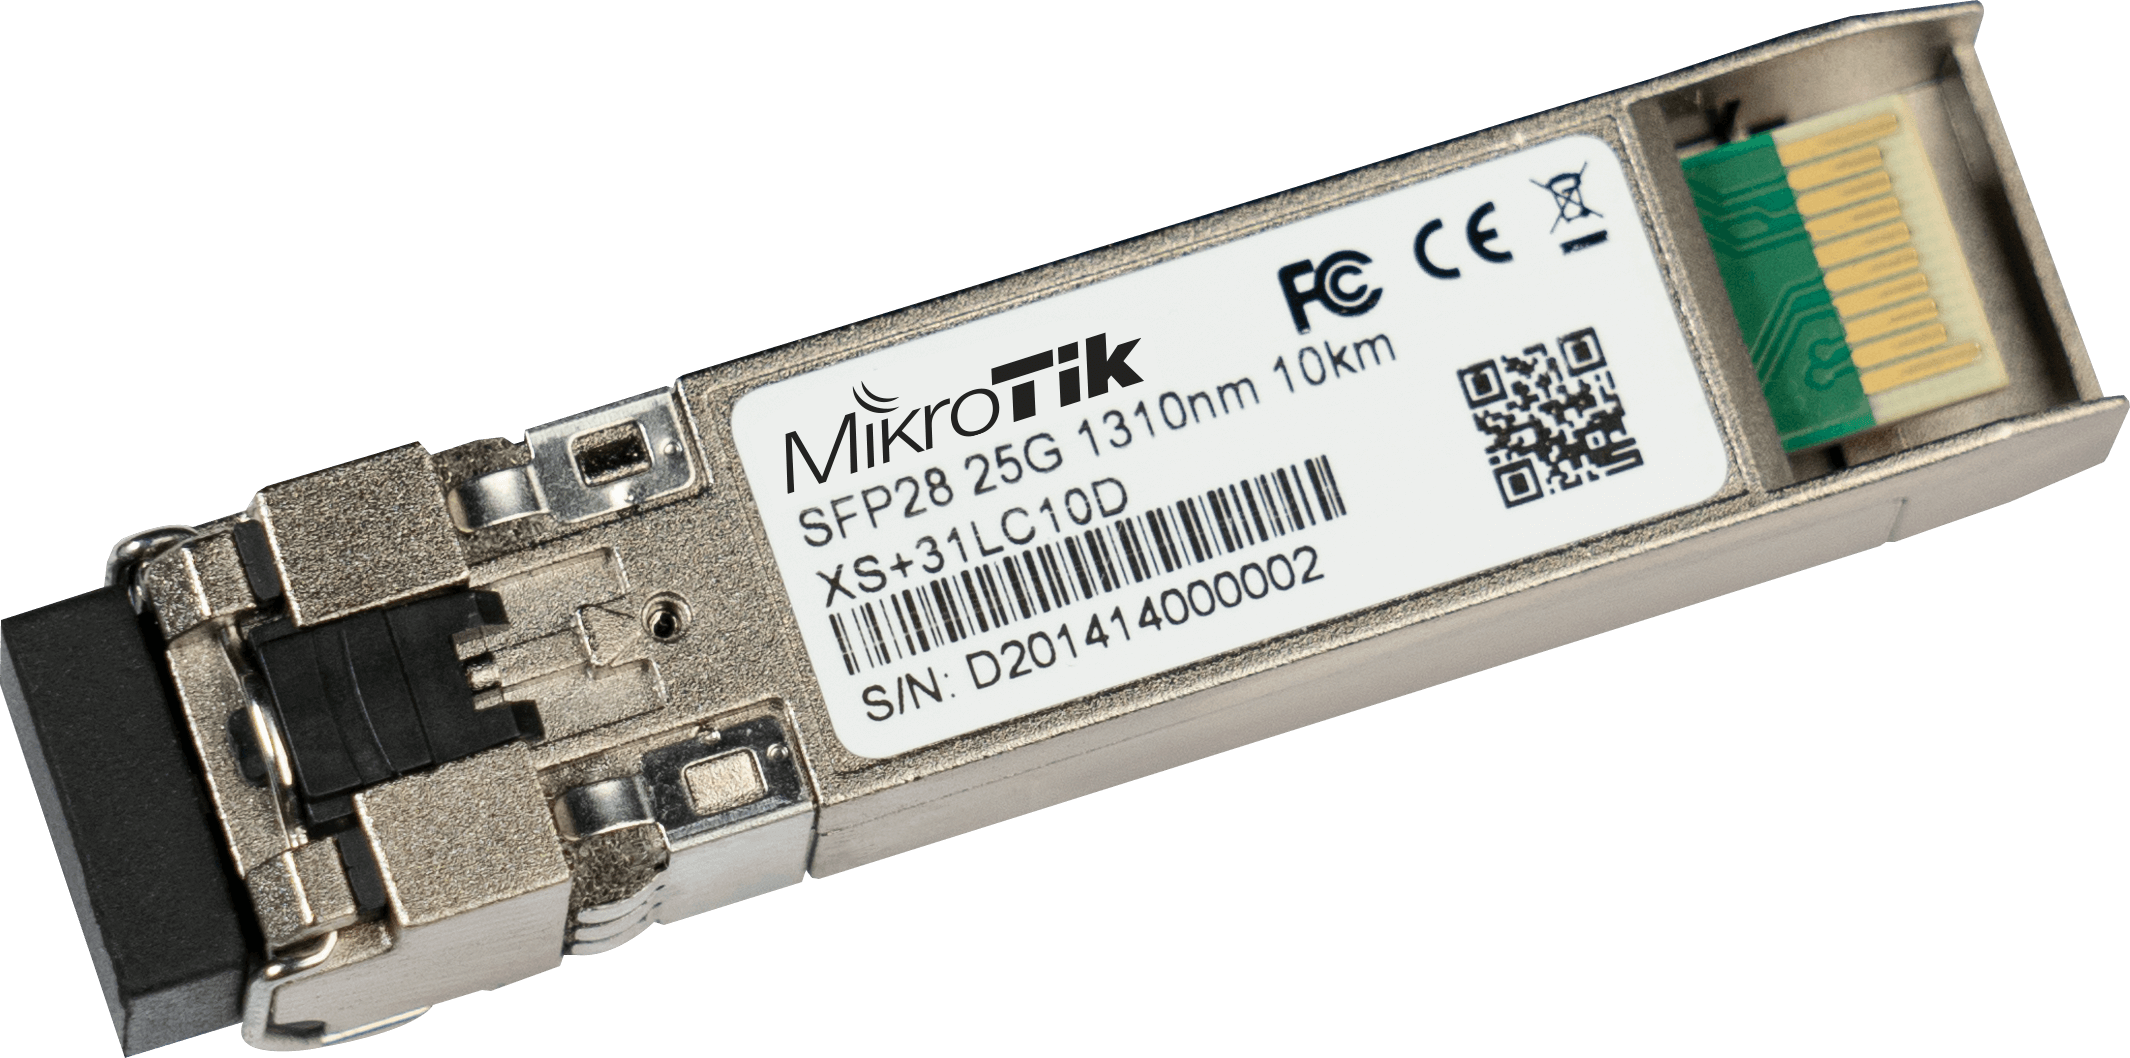 MikroTik combined 1.25G SFP, 10G SFP+ and 25G SFP28 module